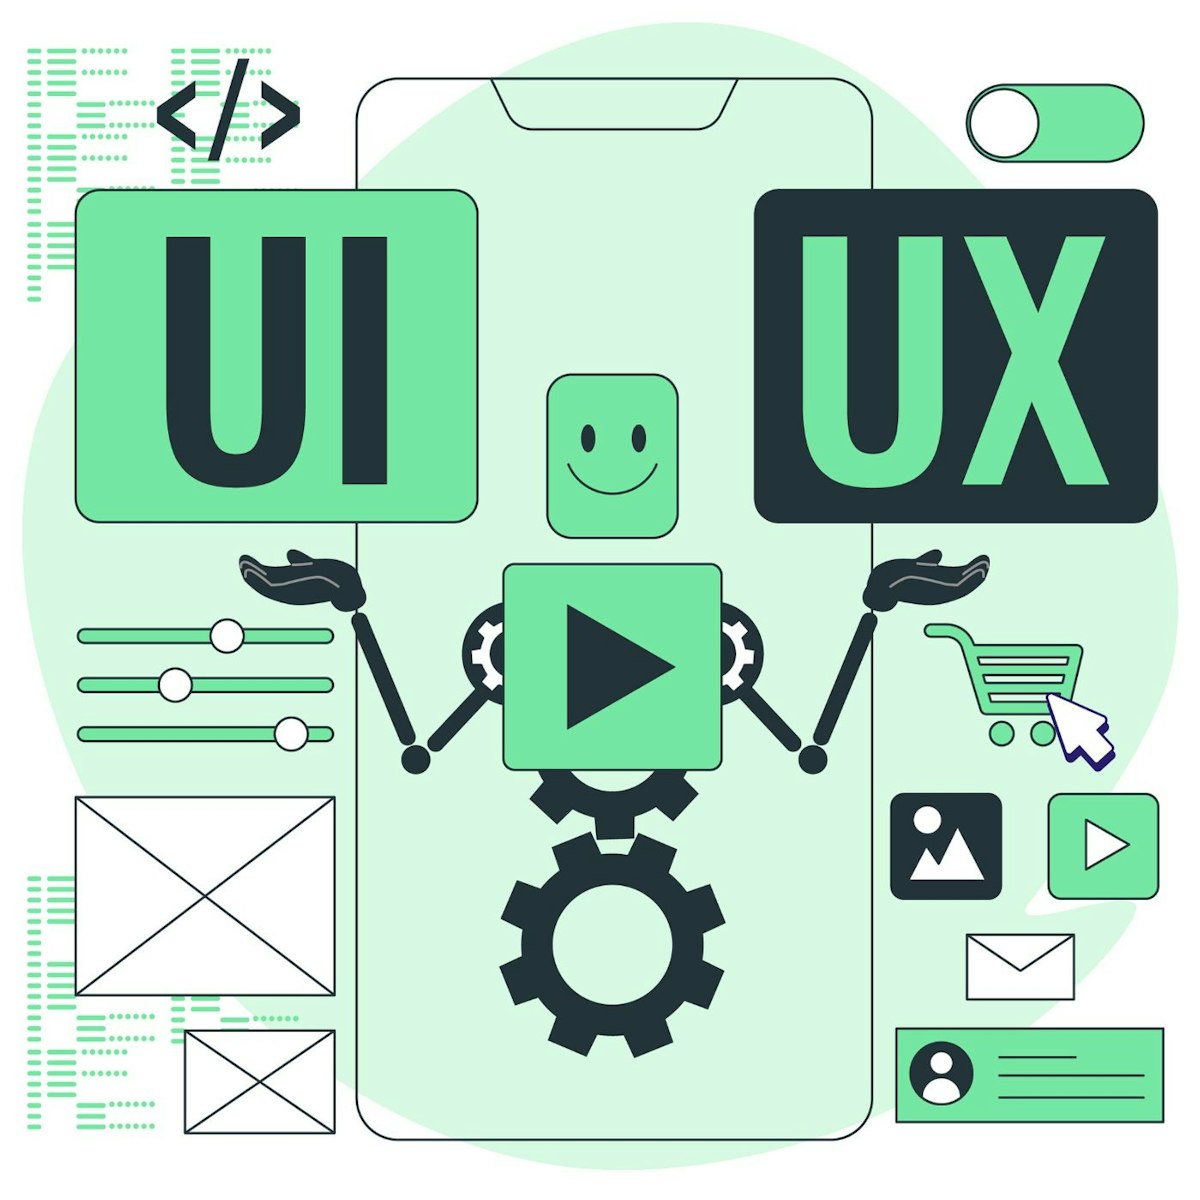 featured image - Thiết kế UI và UX: Sự khác biệt chính là gì?